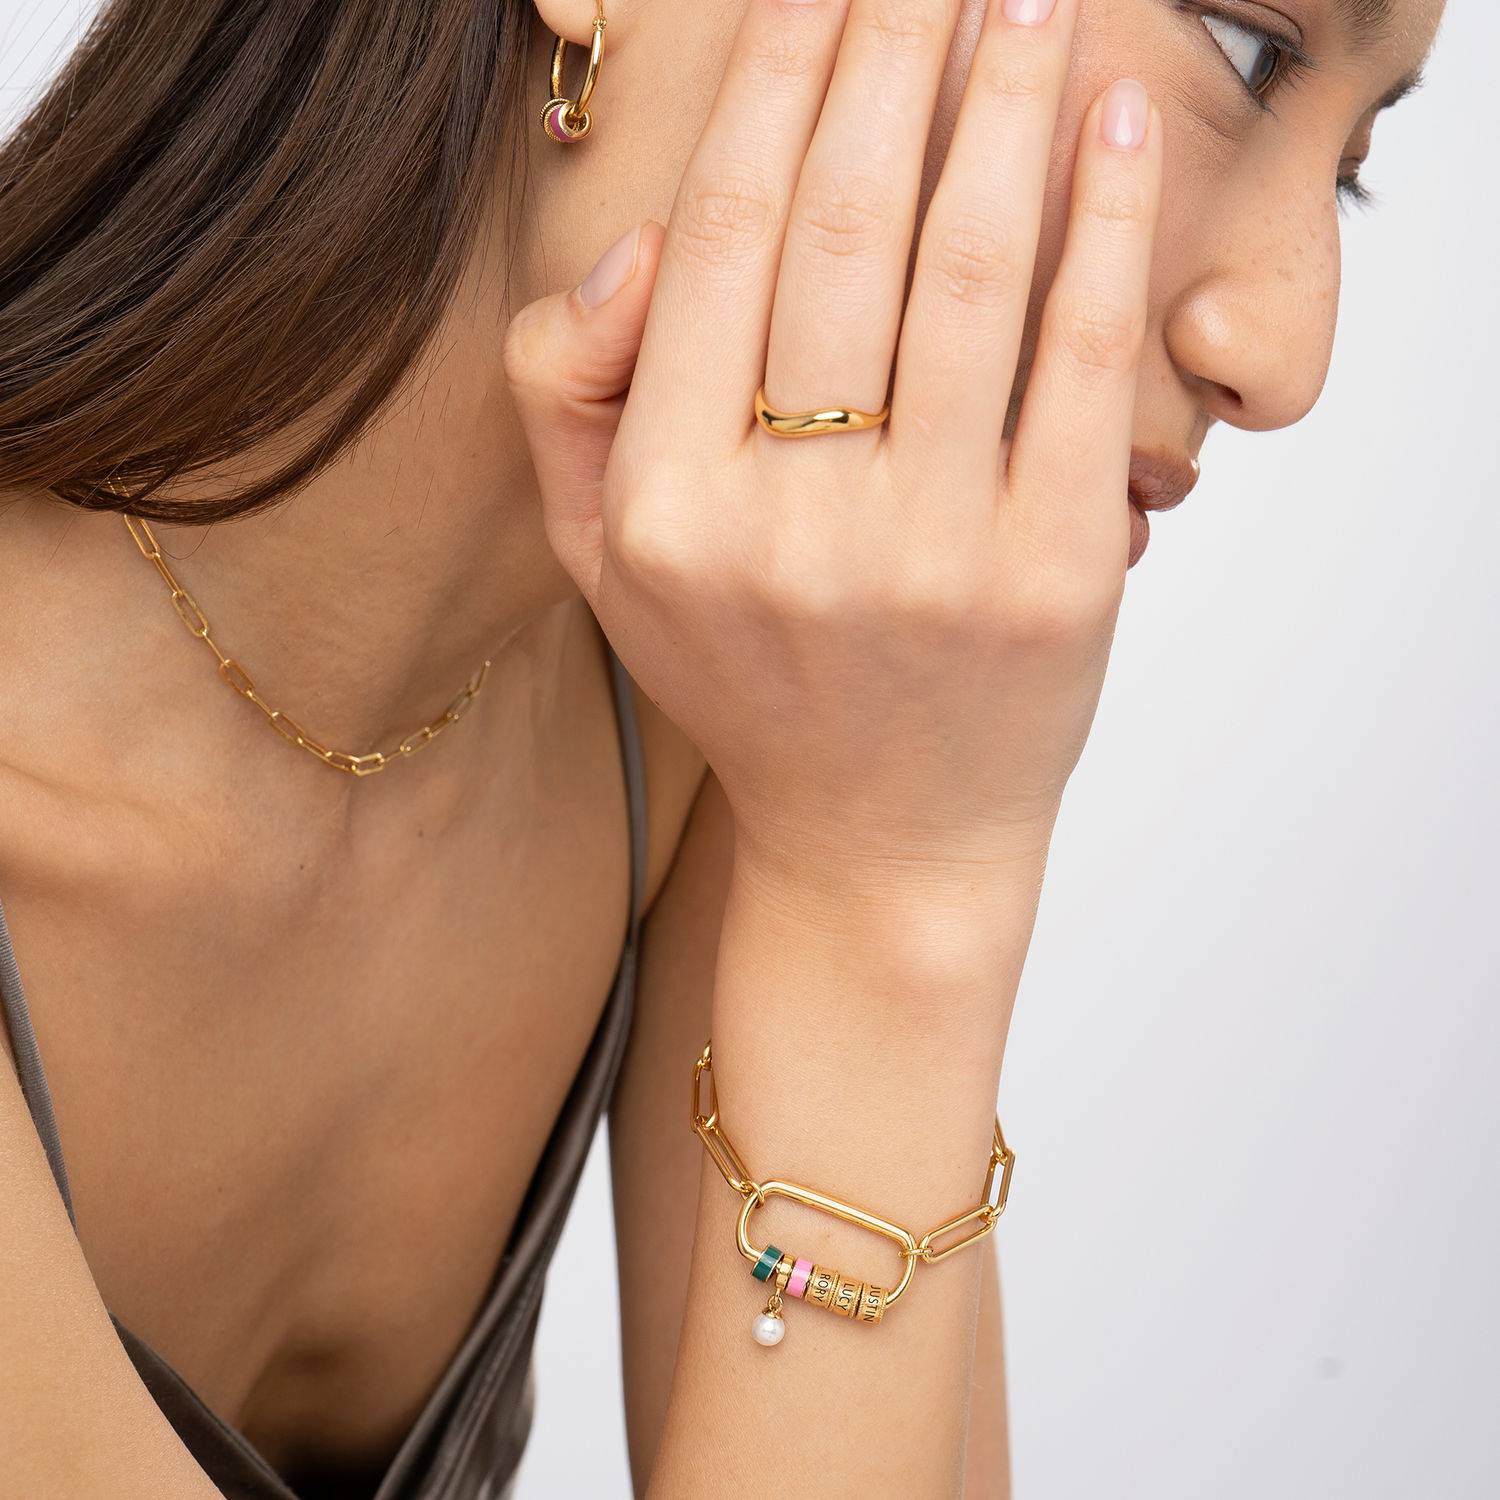 Linda Armband mit ovalem Verschluss und Perle - 750er vergoldetes Produktfoto